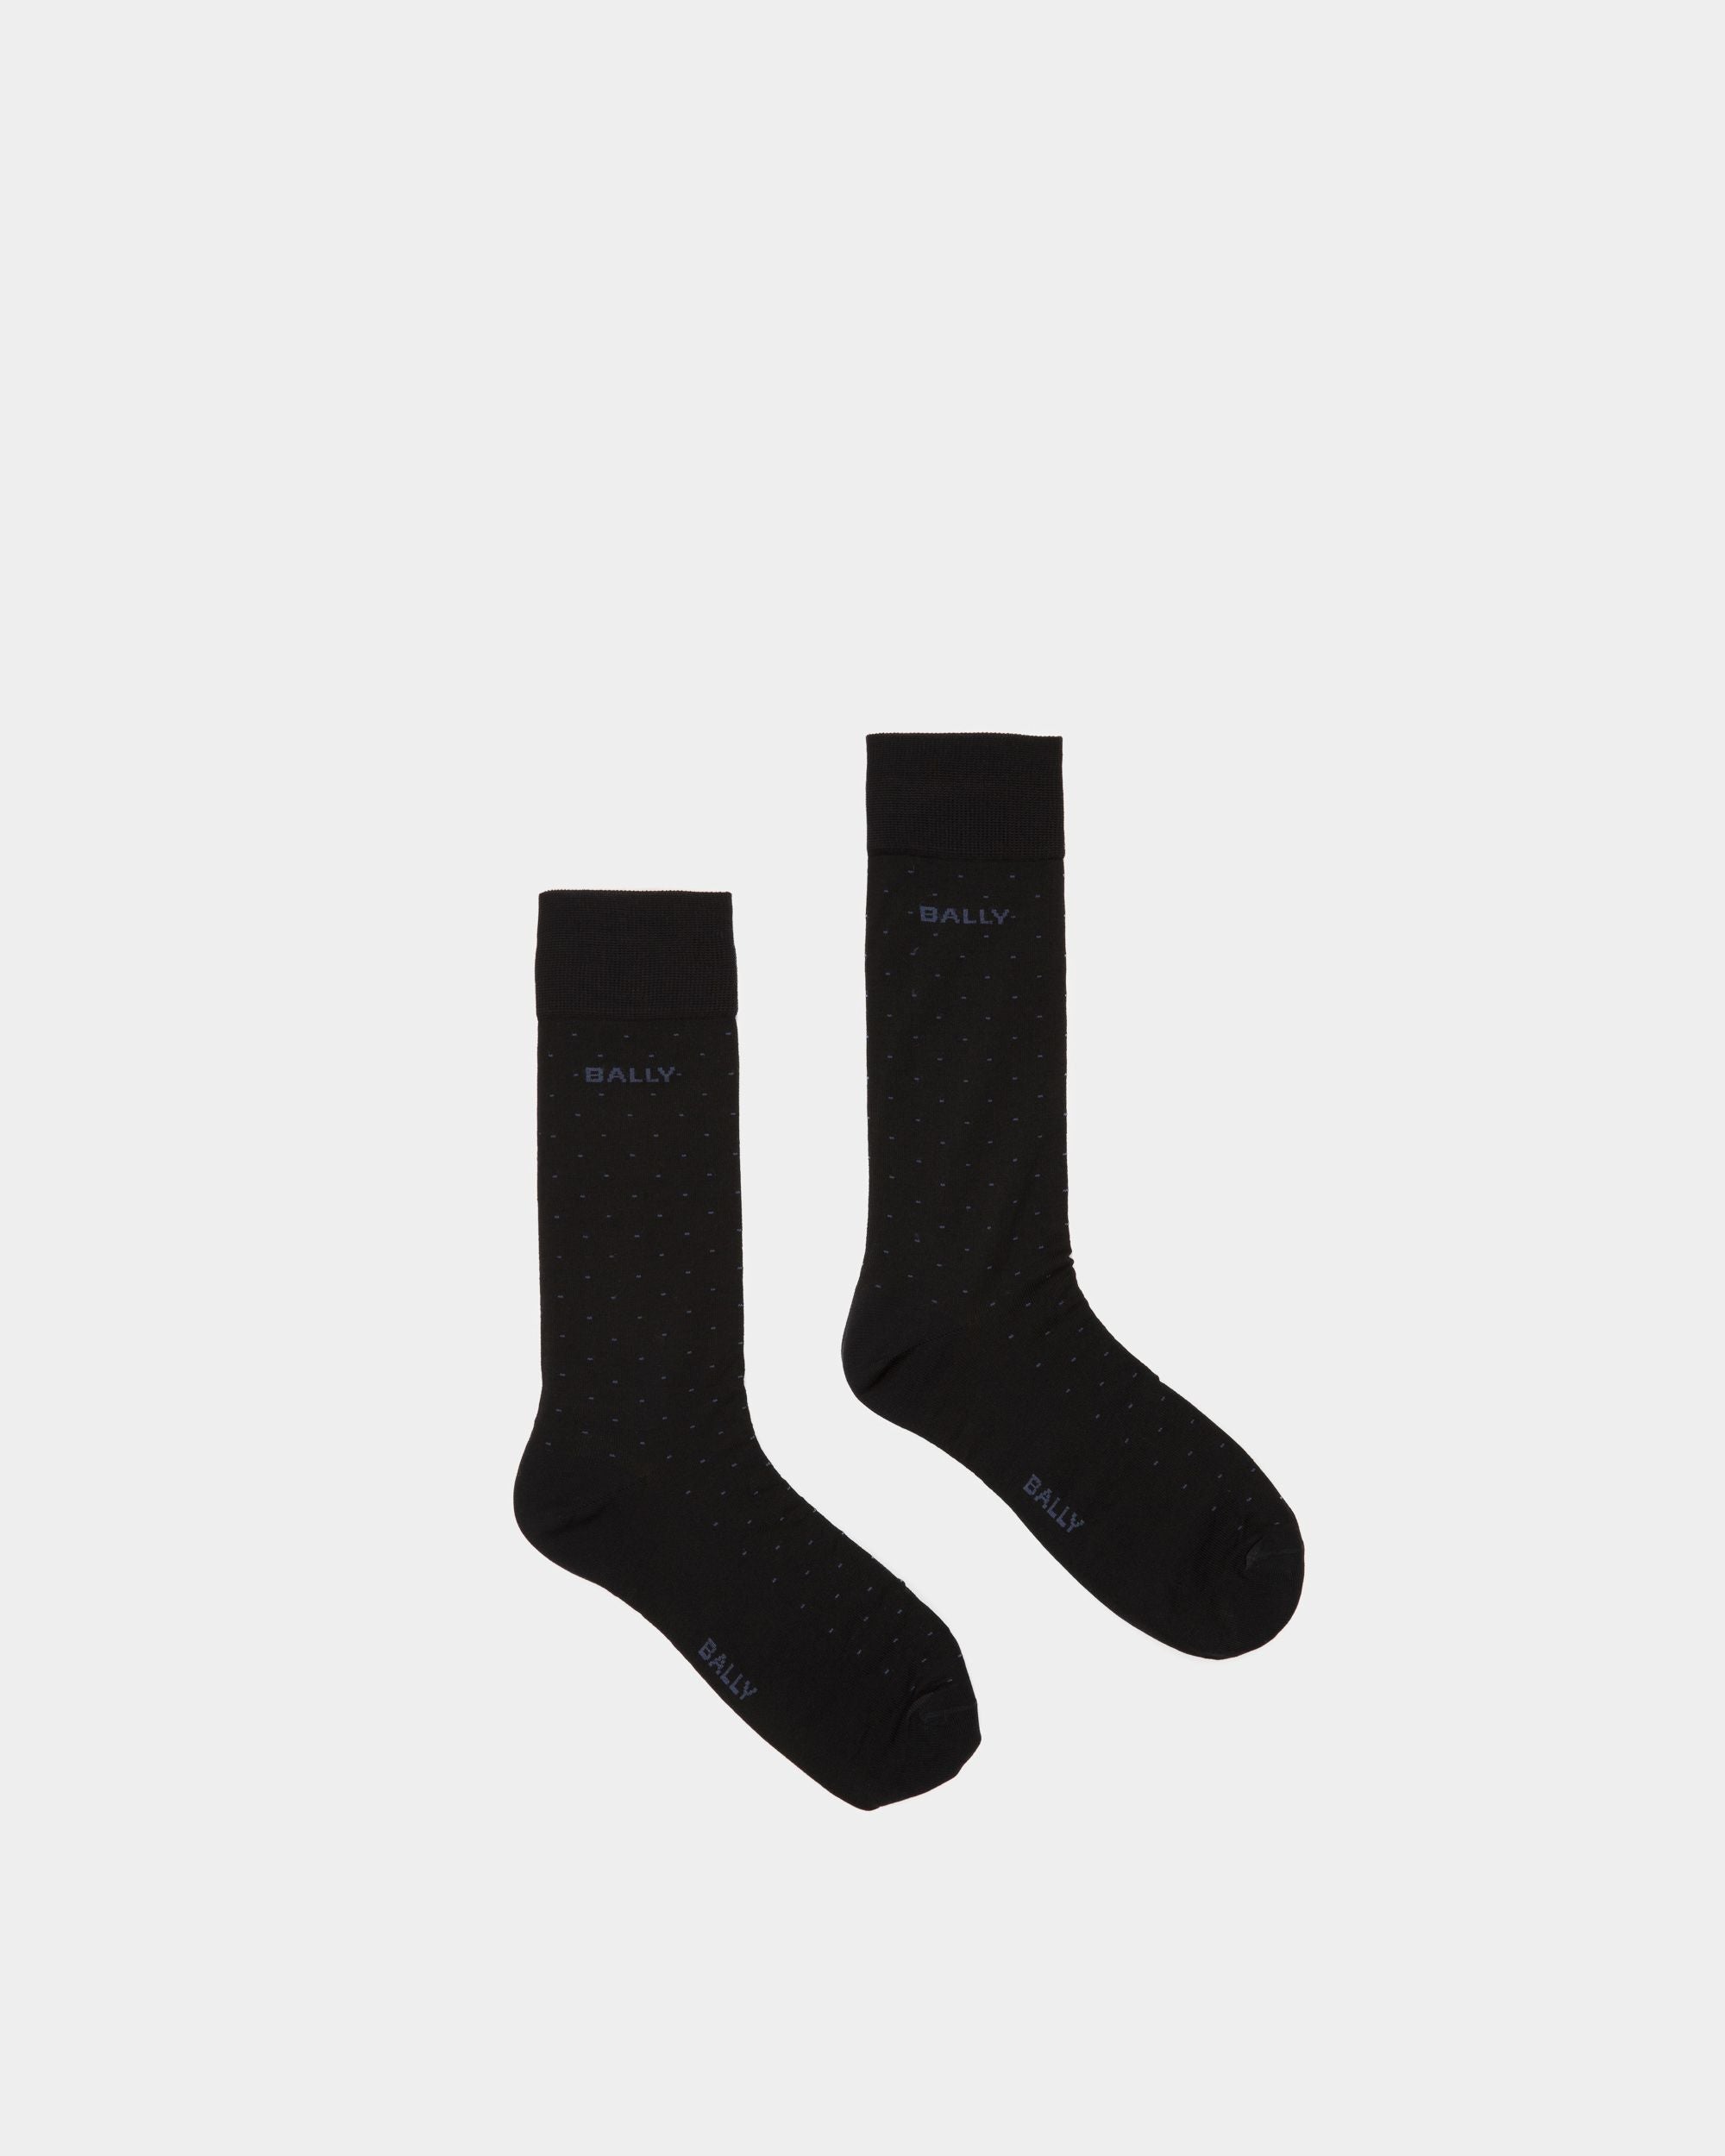 Chaussettes à rayures avec logo | Chaussettes pour homme | Coton mélangé couleur encre | Bally | Still Life Haut